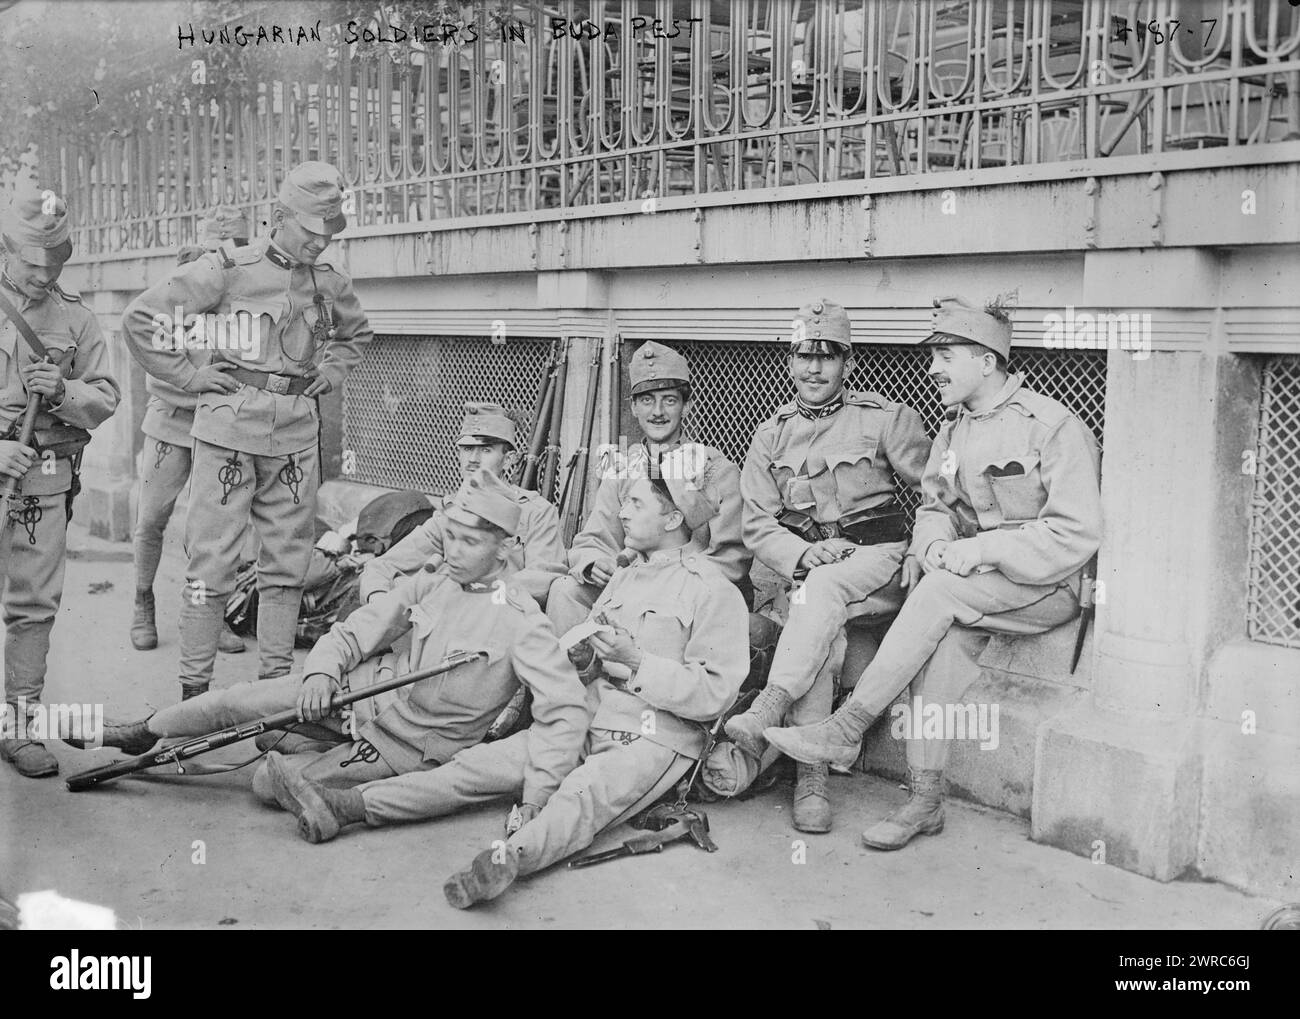 Soldats hongrois à Buda Pest, photographie montre des soldats hongrois à Budapest, Hongrie pendant la première Guerre mondiale, 1917, Guerre mondiale, 1914-1918, négatifs en verre, 1 négatif : verre Banque D'Images